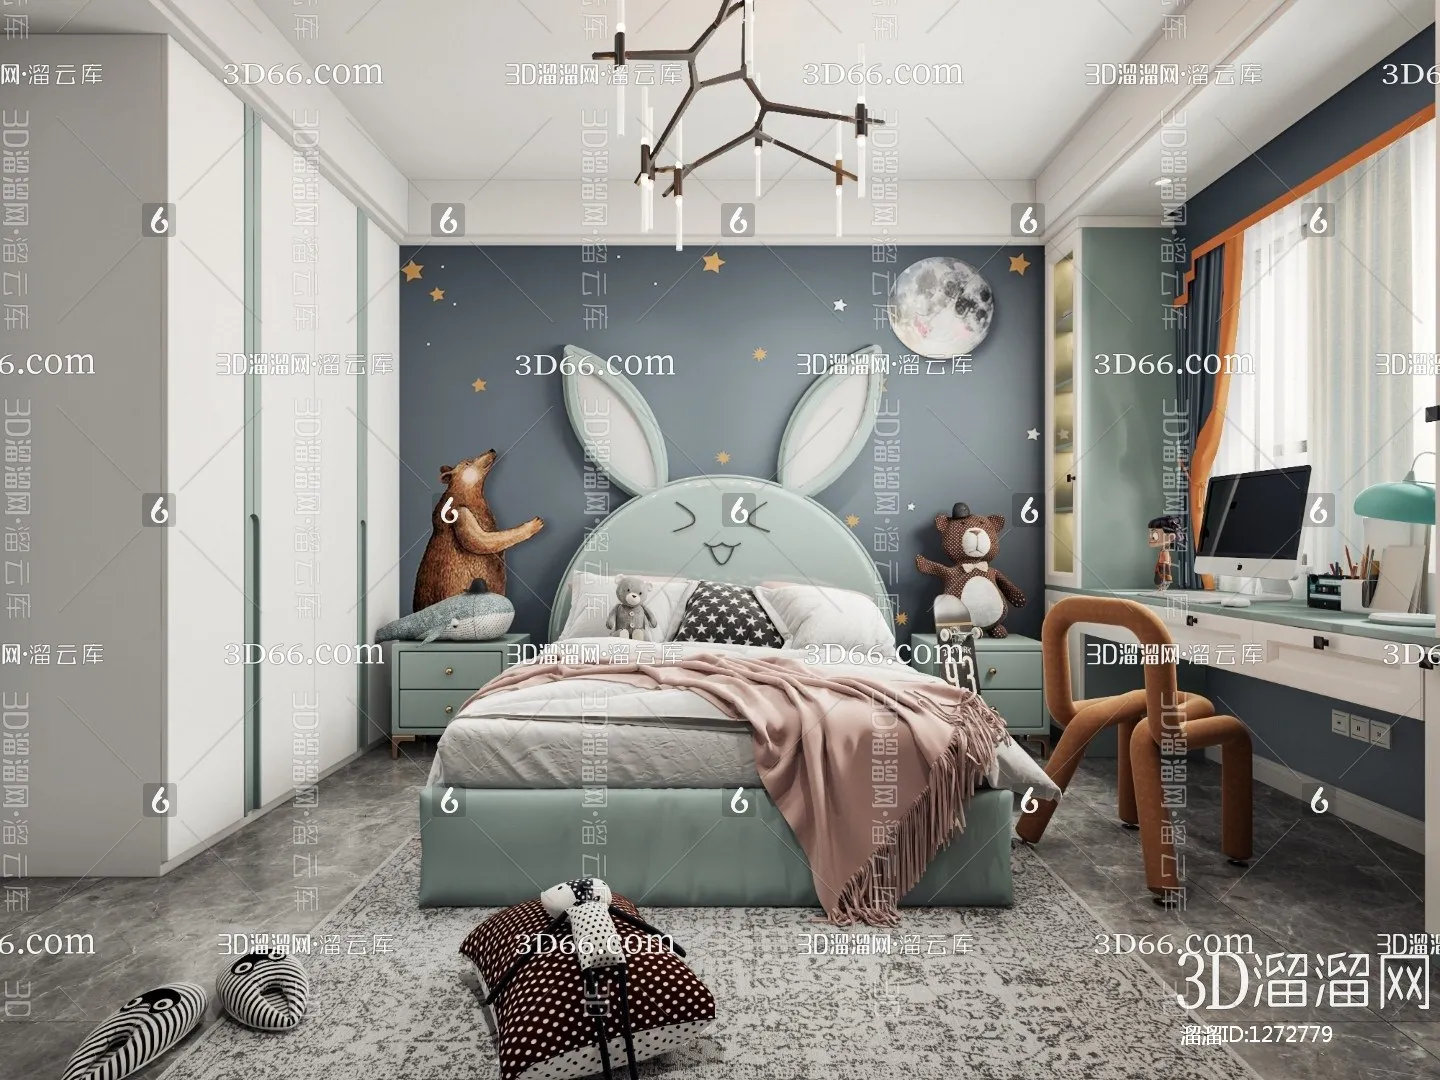 Children Room 3D Scenes – 0373